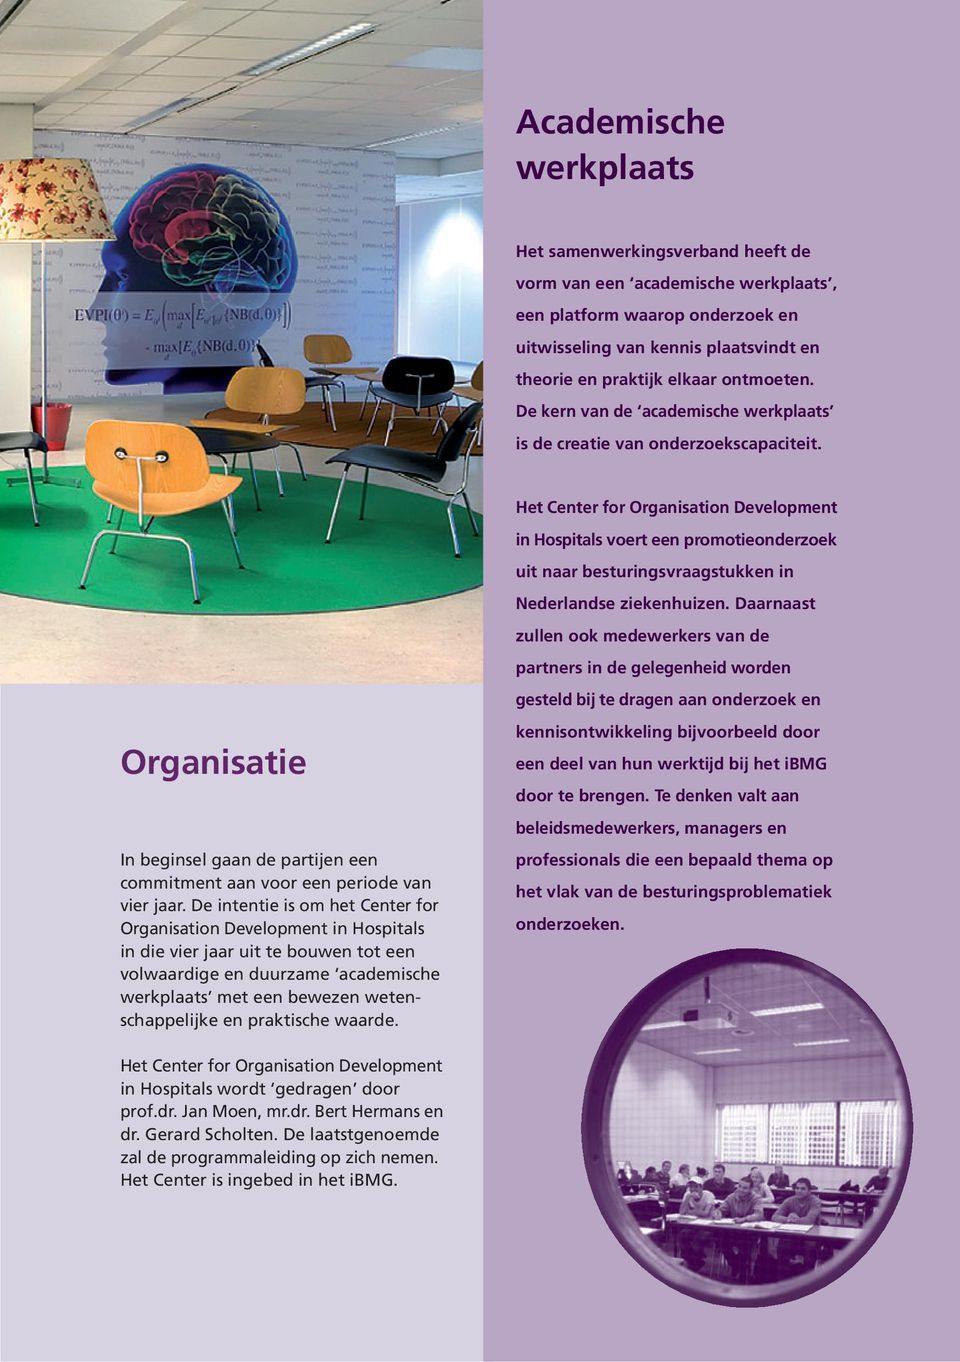 Het Center for Organisation Development in Hospitals voert een promotieonderzoek uit naar besturingsvraagstukken in Nederlandse ziekenhuizen.